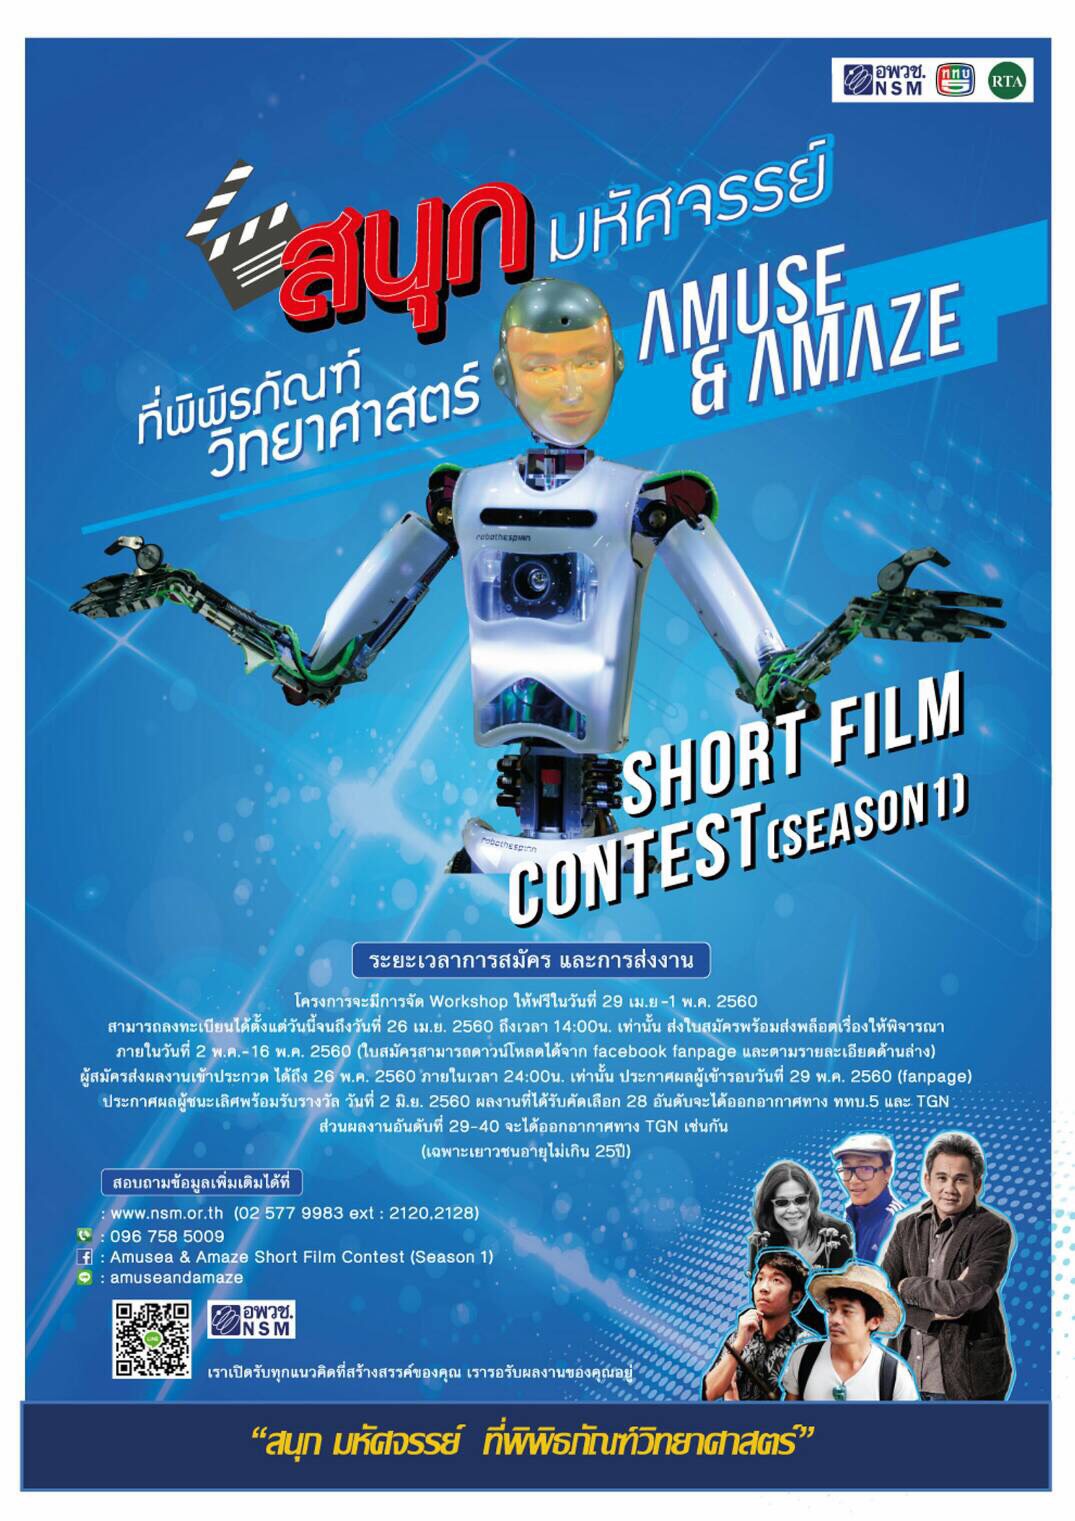 ประกวดหนังสั้น : สนุกอย่างมหัศจรรย์ที่พิพิธภัณฑ์วิทยาศาสตร์ Amuse & Amaze Short Film Contest (Season1)